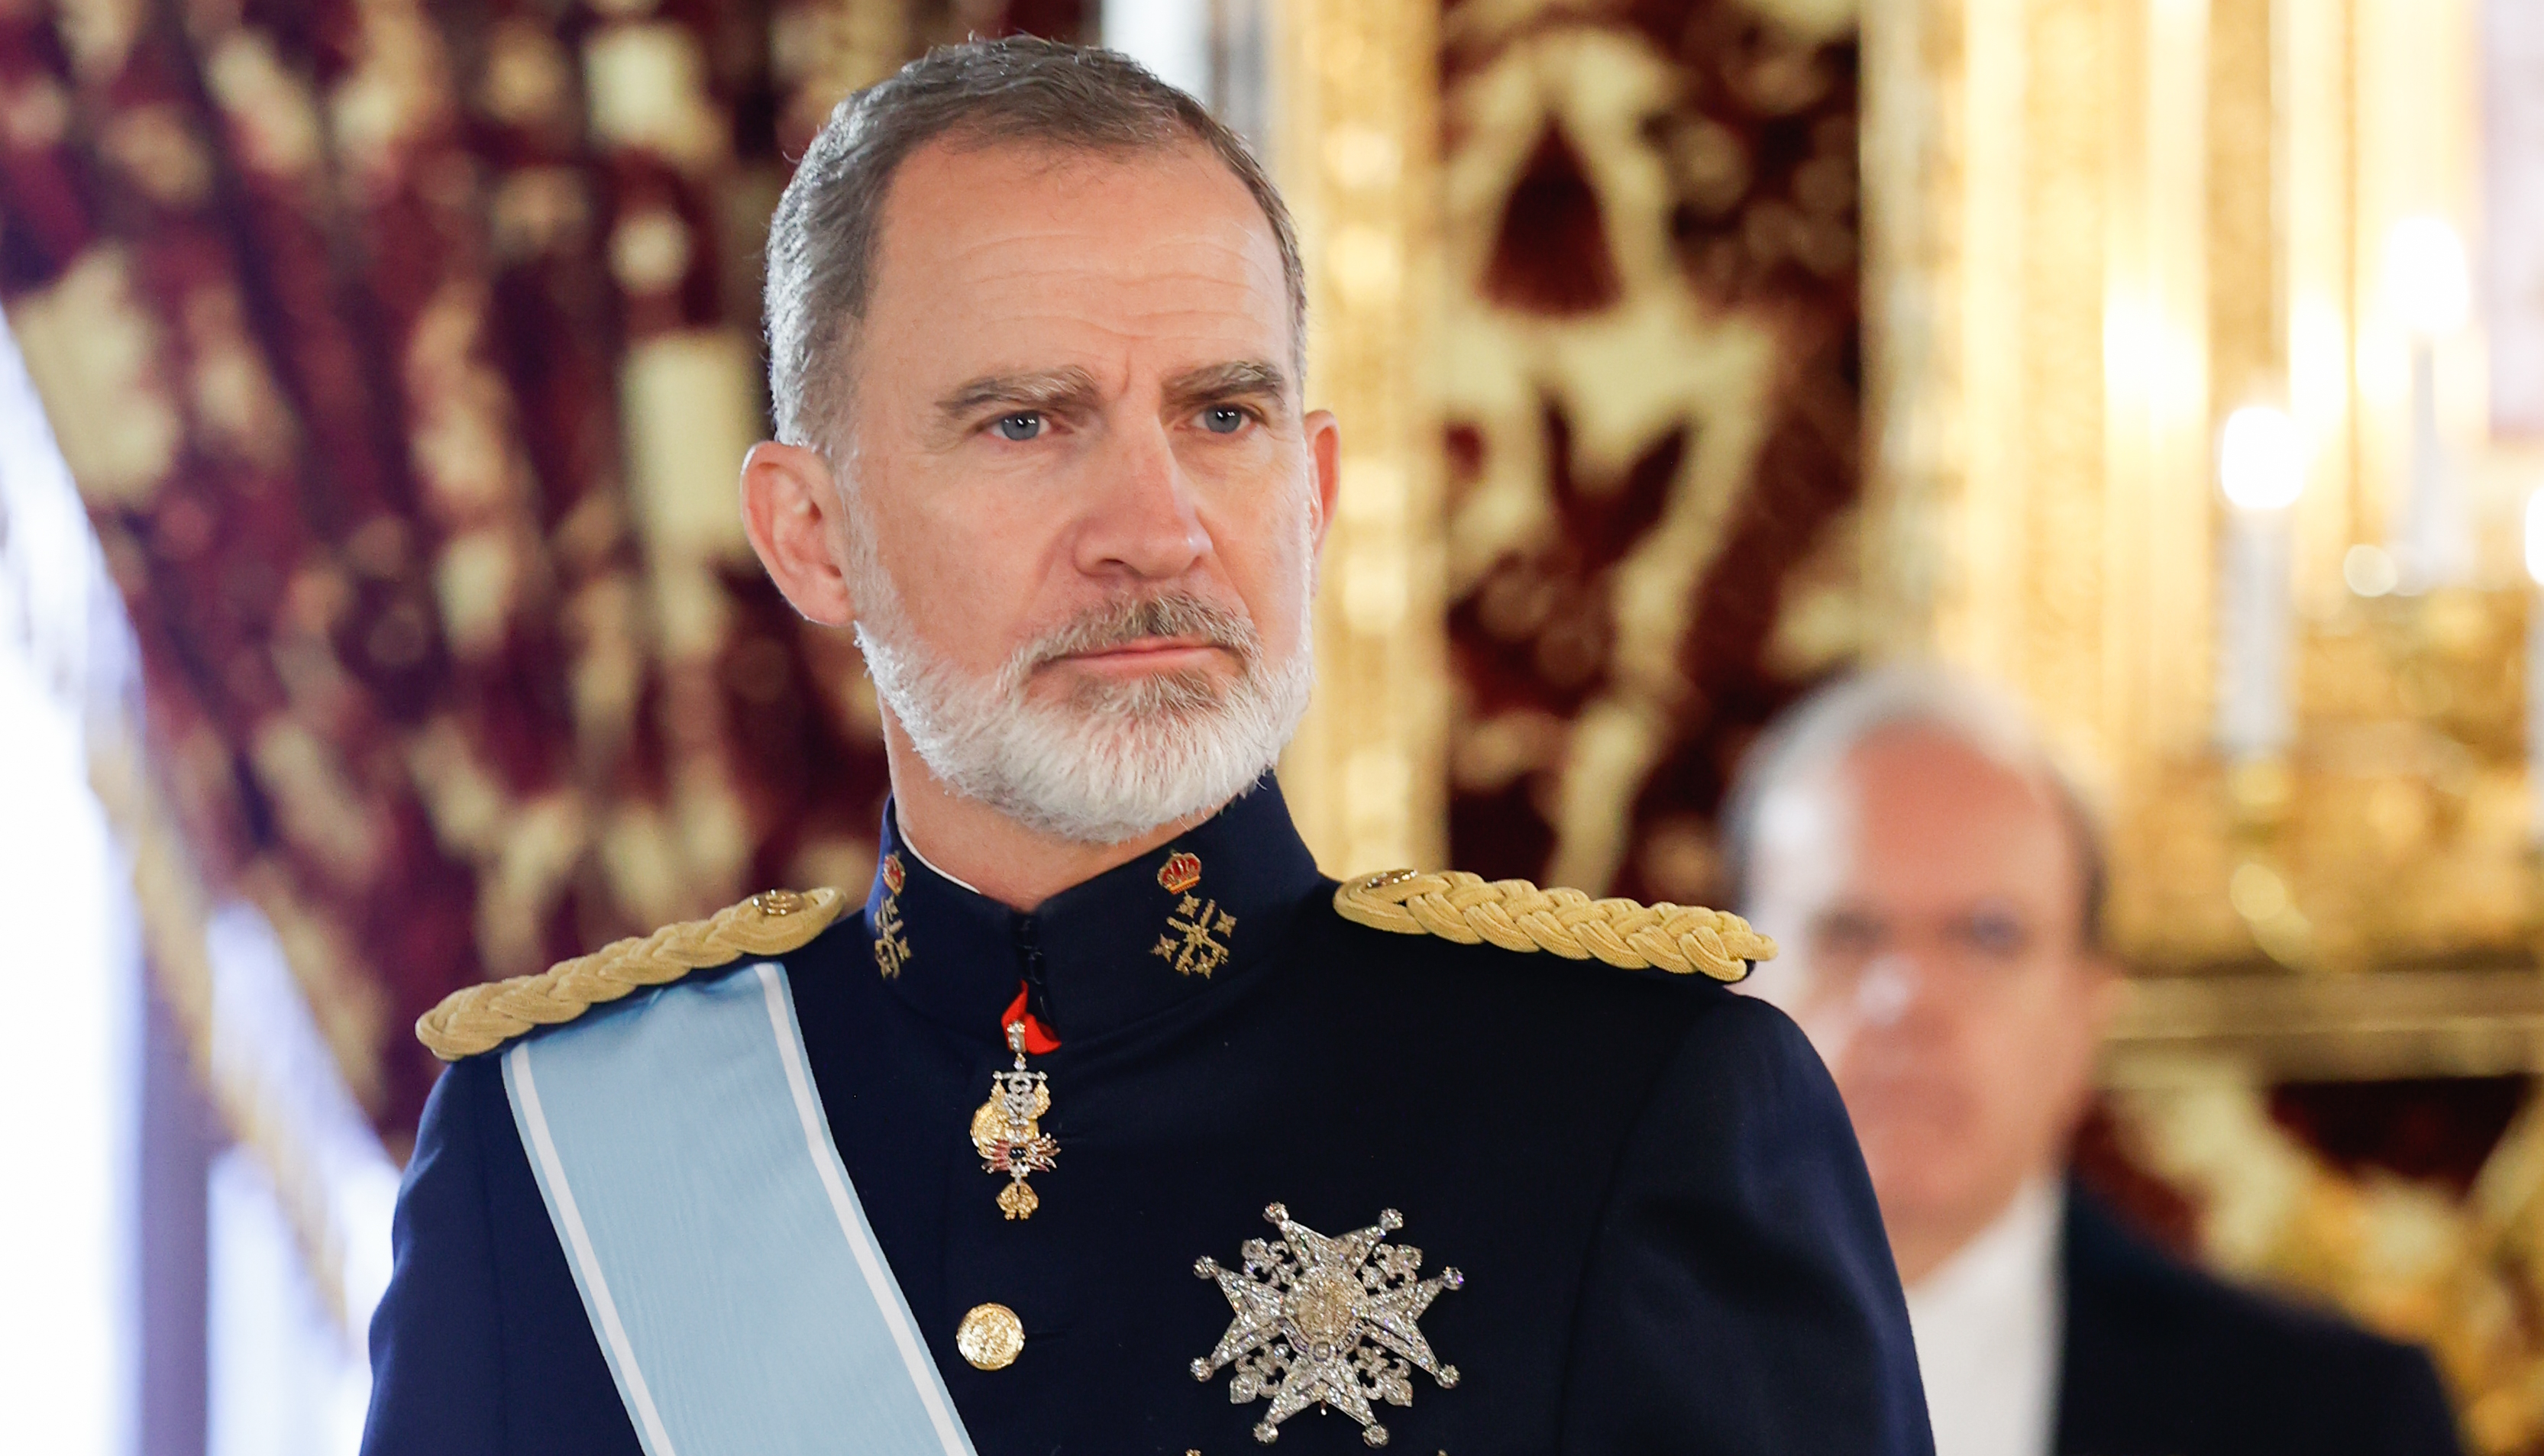 Felipe llena la agenda oficial para alejarse de Letizia, acepta un cargo sorprendente